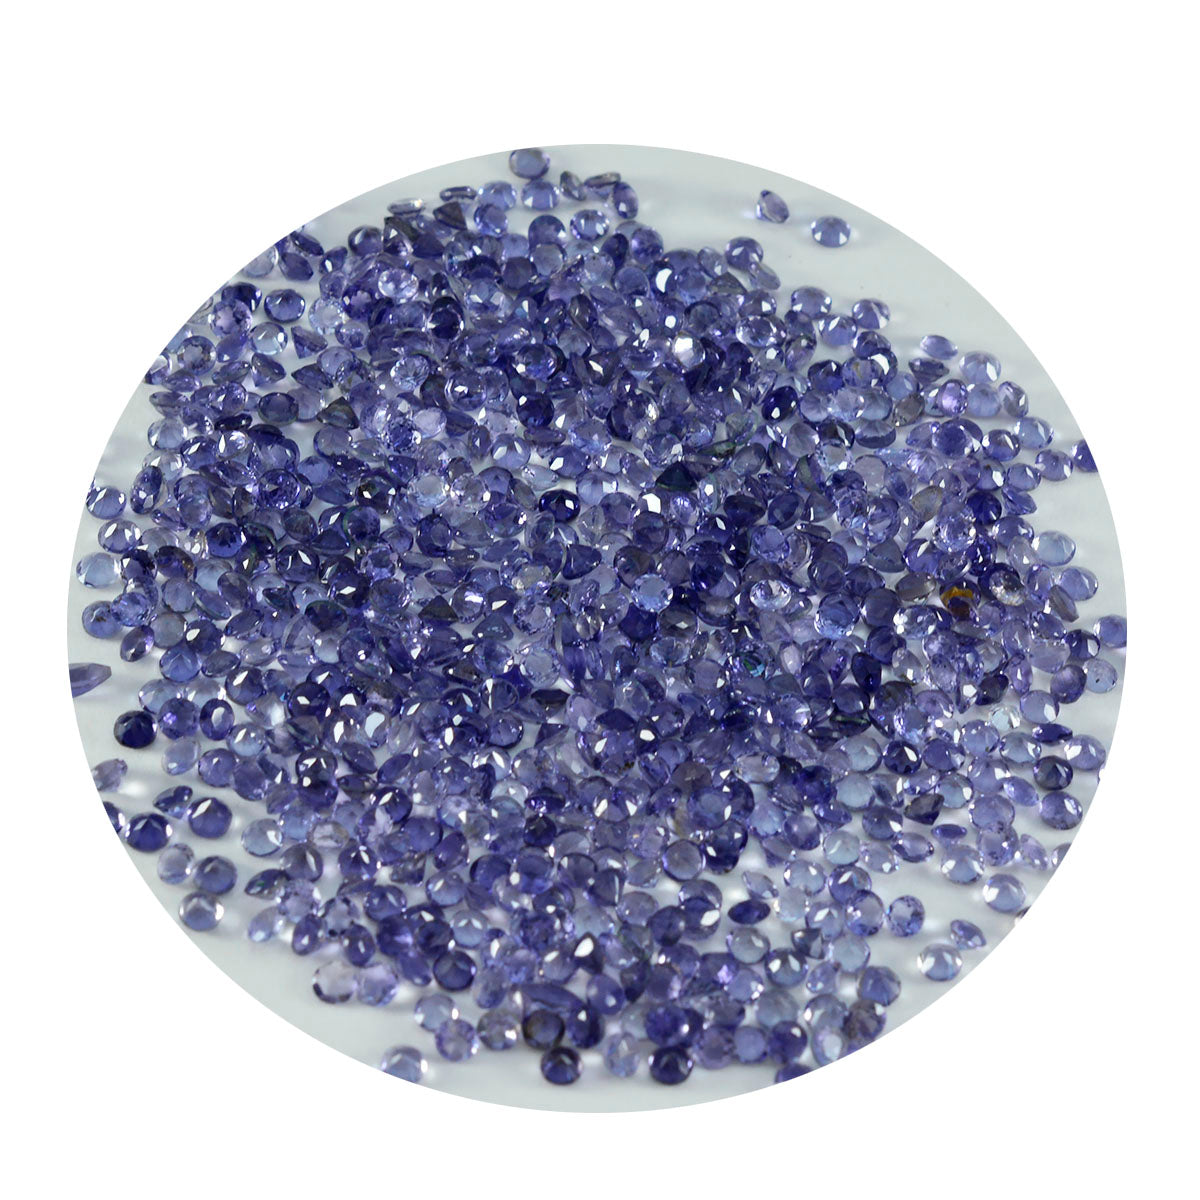 Riyogems 1 pièce d'iolite bleue à facettes 2x2 mm de forme ronde, pierres précieuses d'excellente qualité